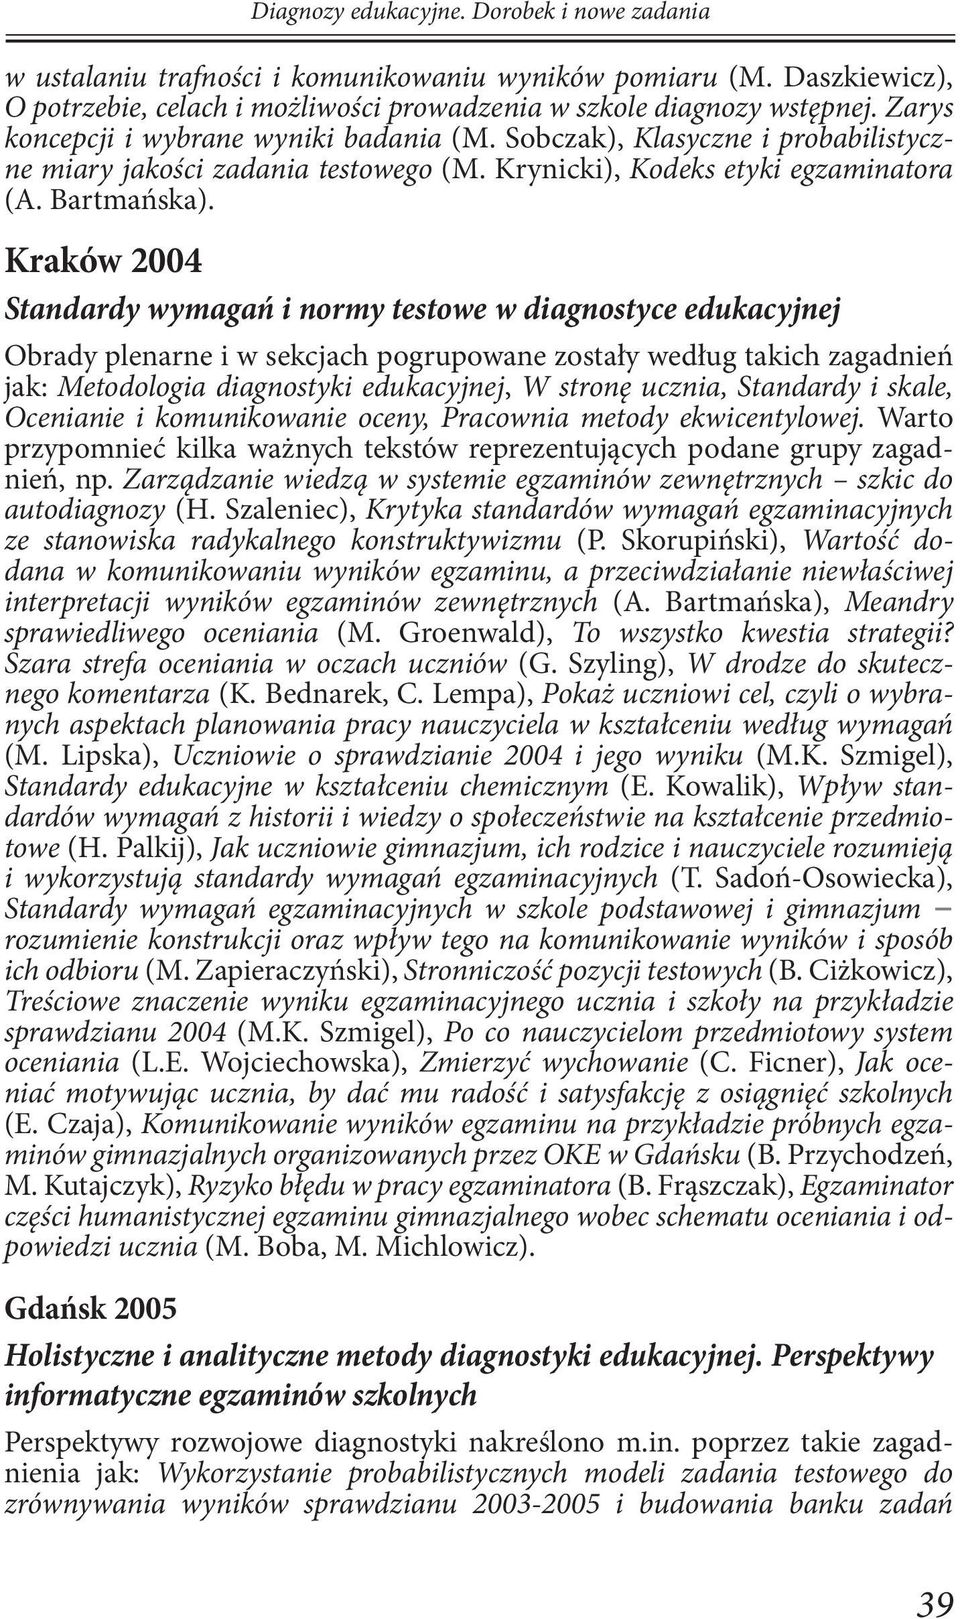 Kraków 2004 Standardy wymagań i normy testowe w diagnostyce edukacyjnej Obrady plenarne i w sekcjach pogrupowane zostały według takich zagadnień jak: Metodologia diagnostyki edukacyjnej, W stronę